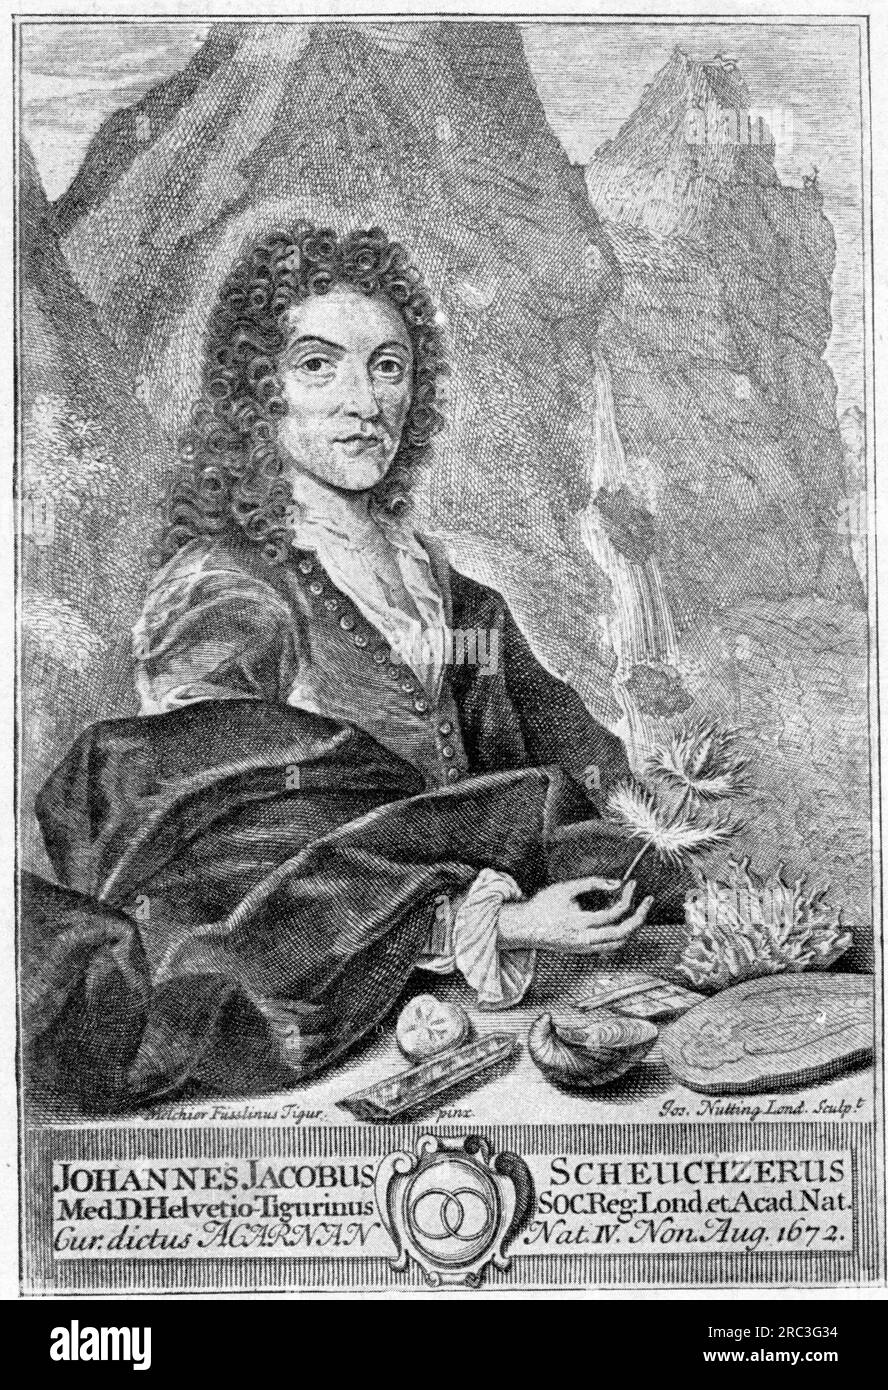 Scheuchzer, Johann Jakob, 5.8.1672 - 23.6,1733, médecin et scientifique suisse, INFORMATIONS-AUTORISATION-DROITS-SUPPLÉMENTAIRES-NOT-AVAILABLE Banque D'Images